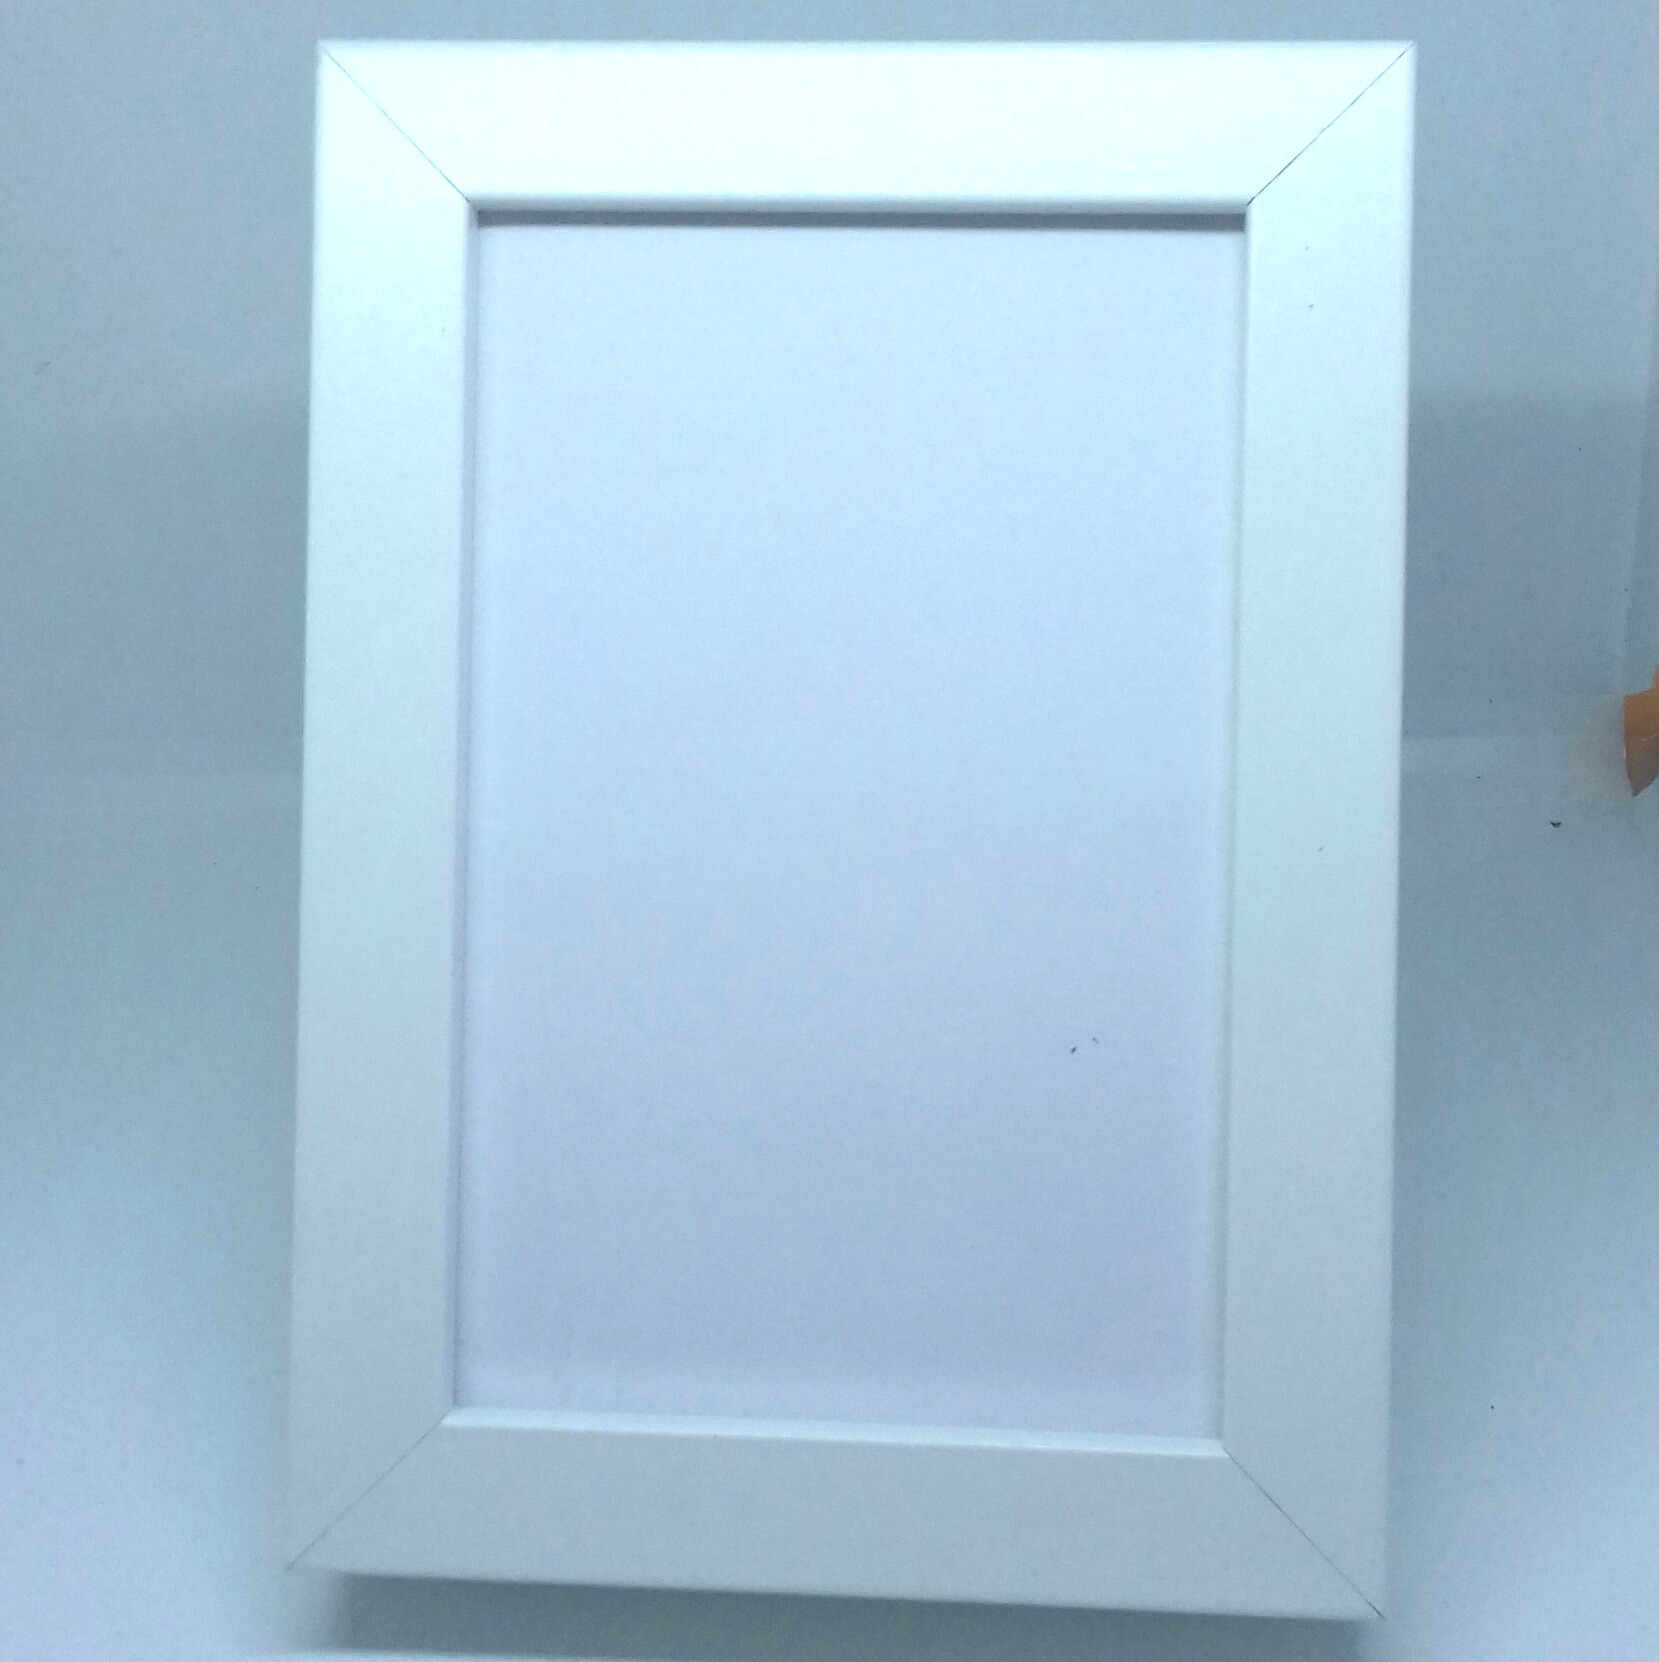 01.2 Frame 10x15 cm (IK)